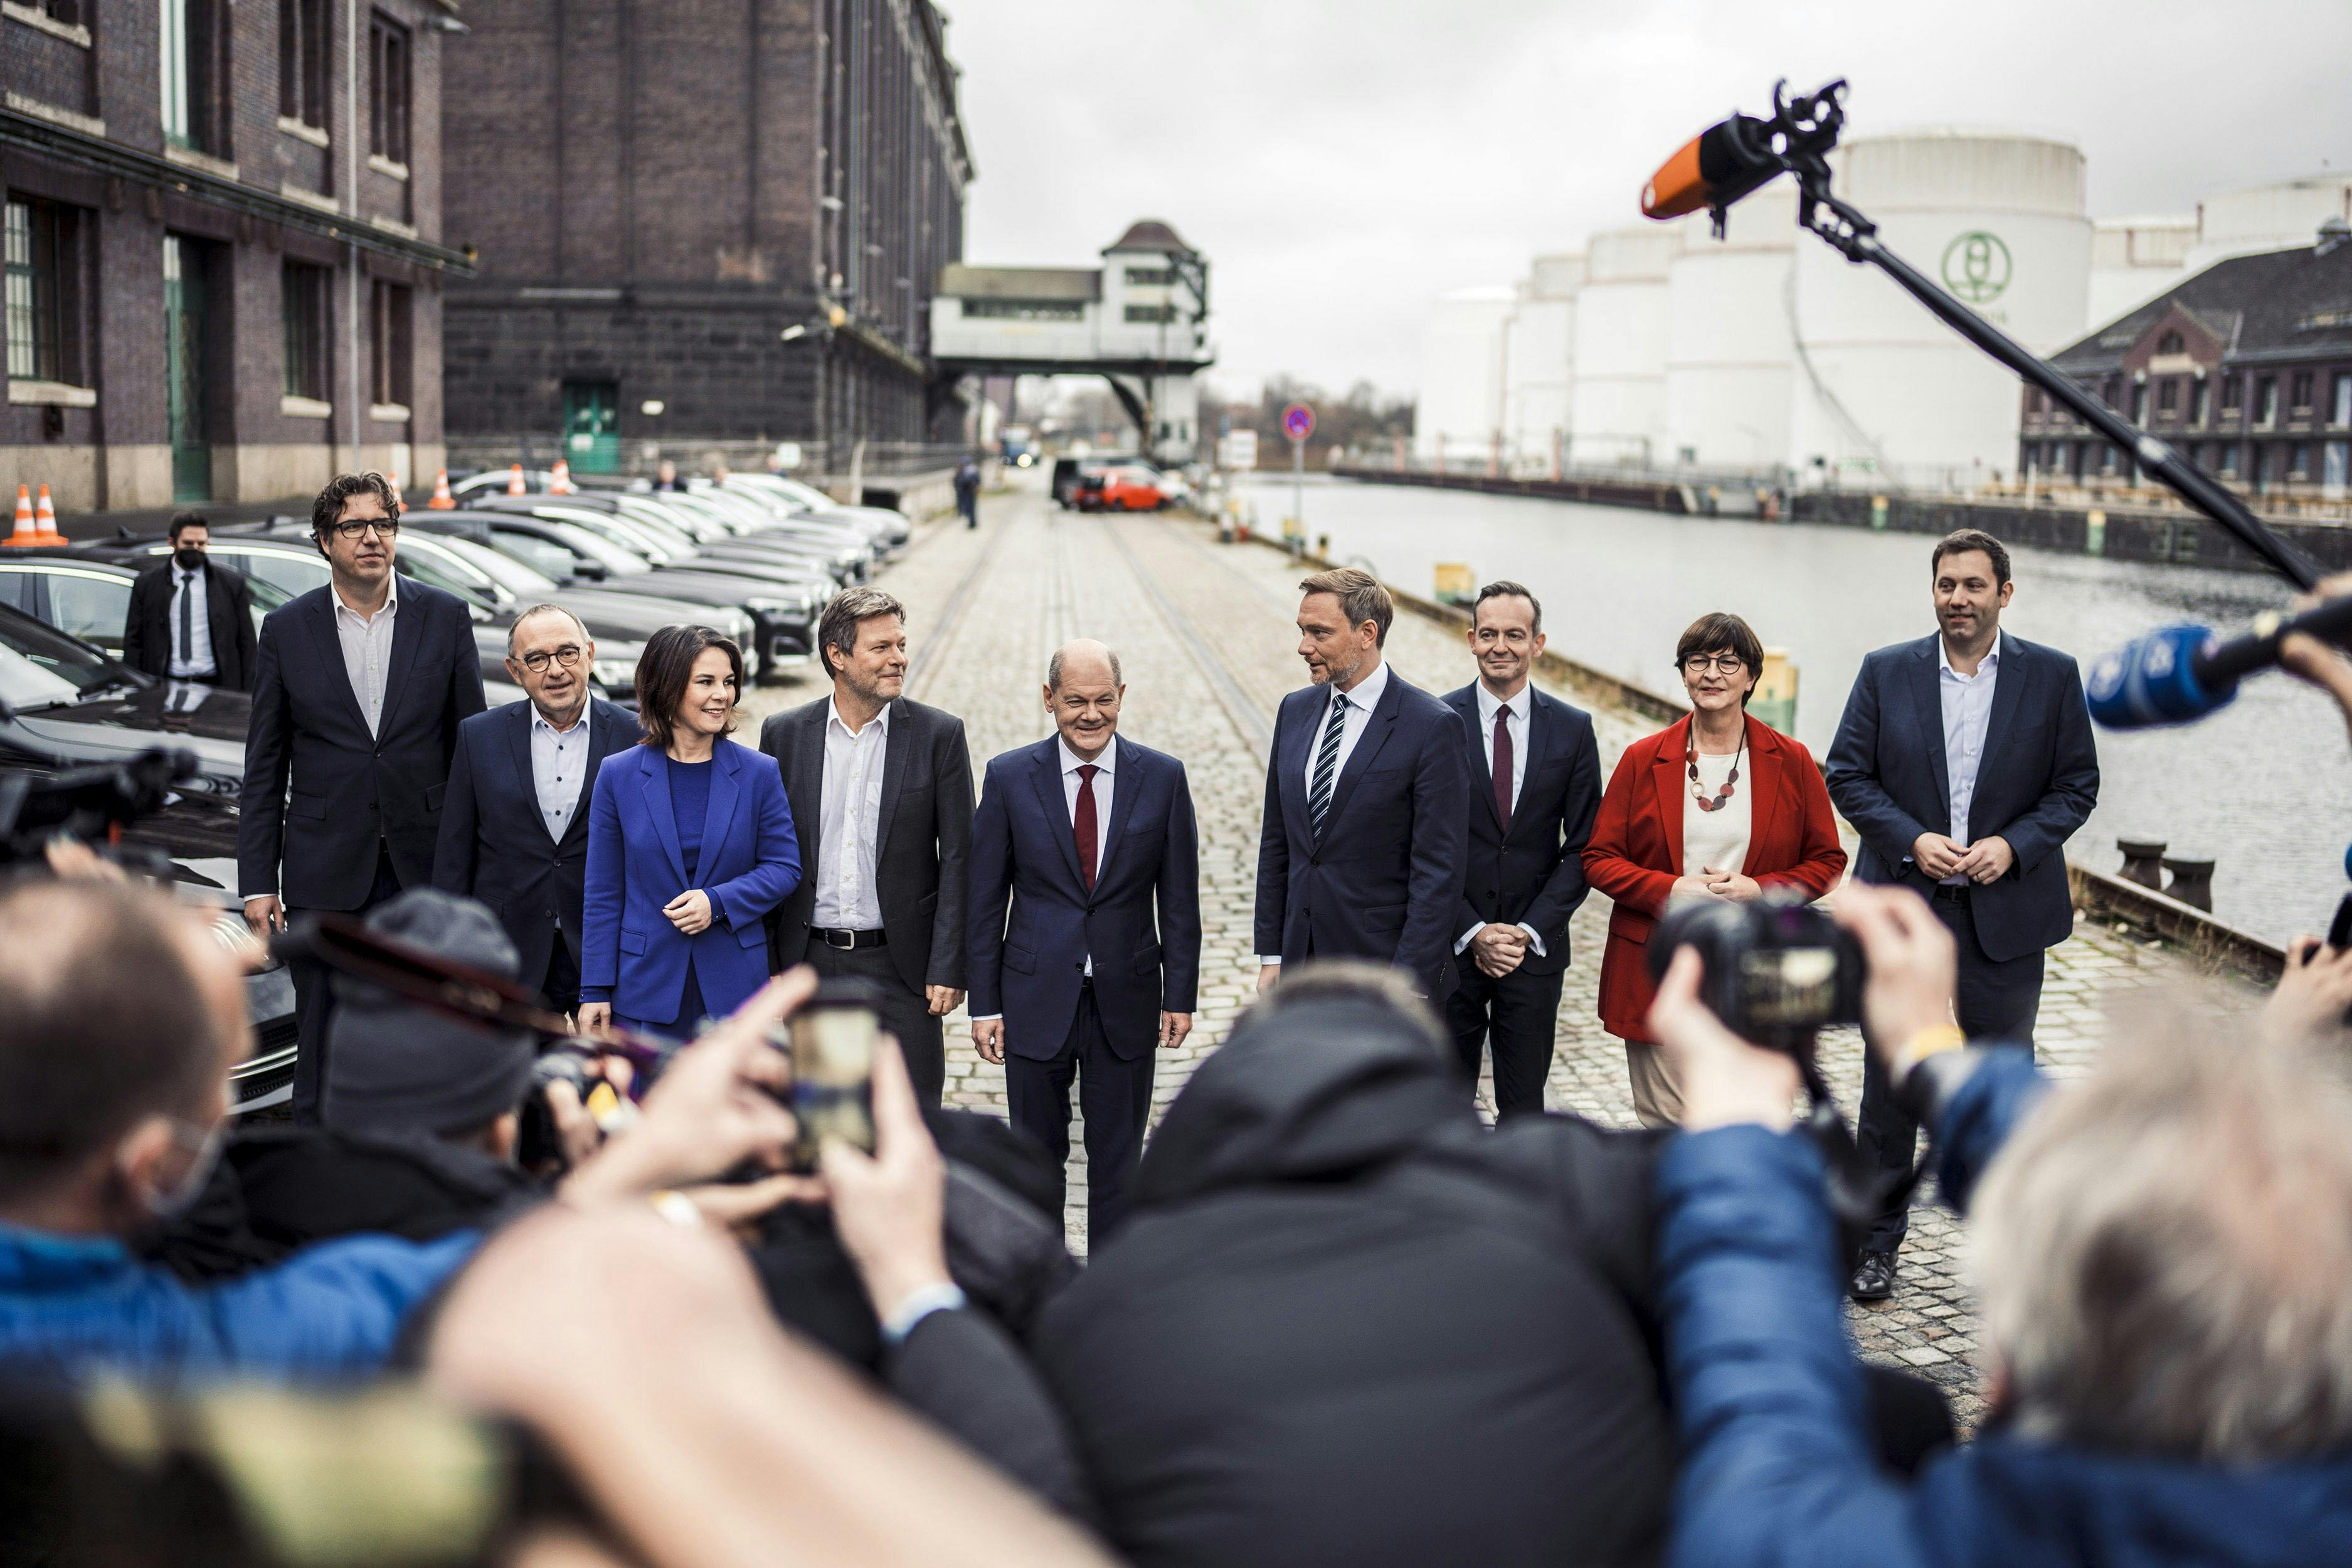 Politiker*innen von GRÜNEN, SPD und FDP stehen nebeneinander, vor ihnen viele Journalist*innen mt Kameras und Mikrofonen.